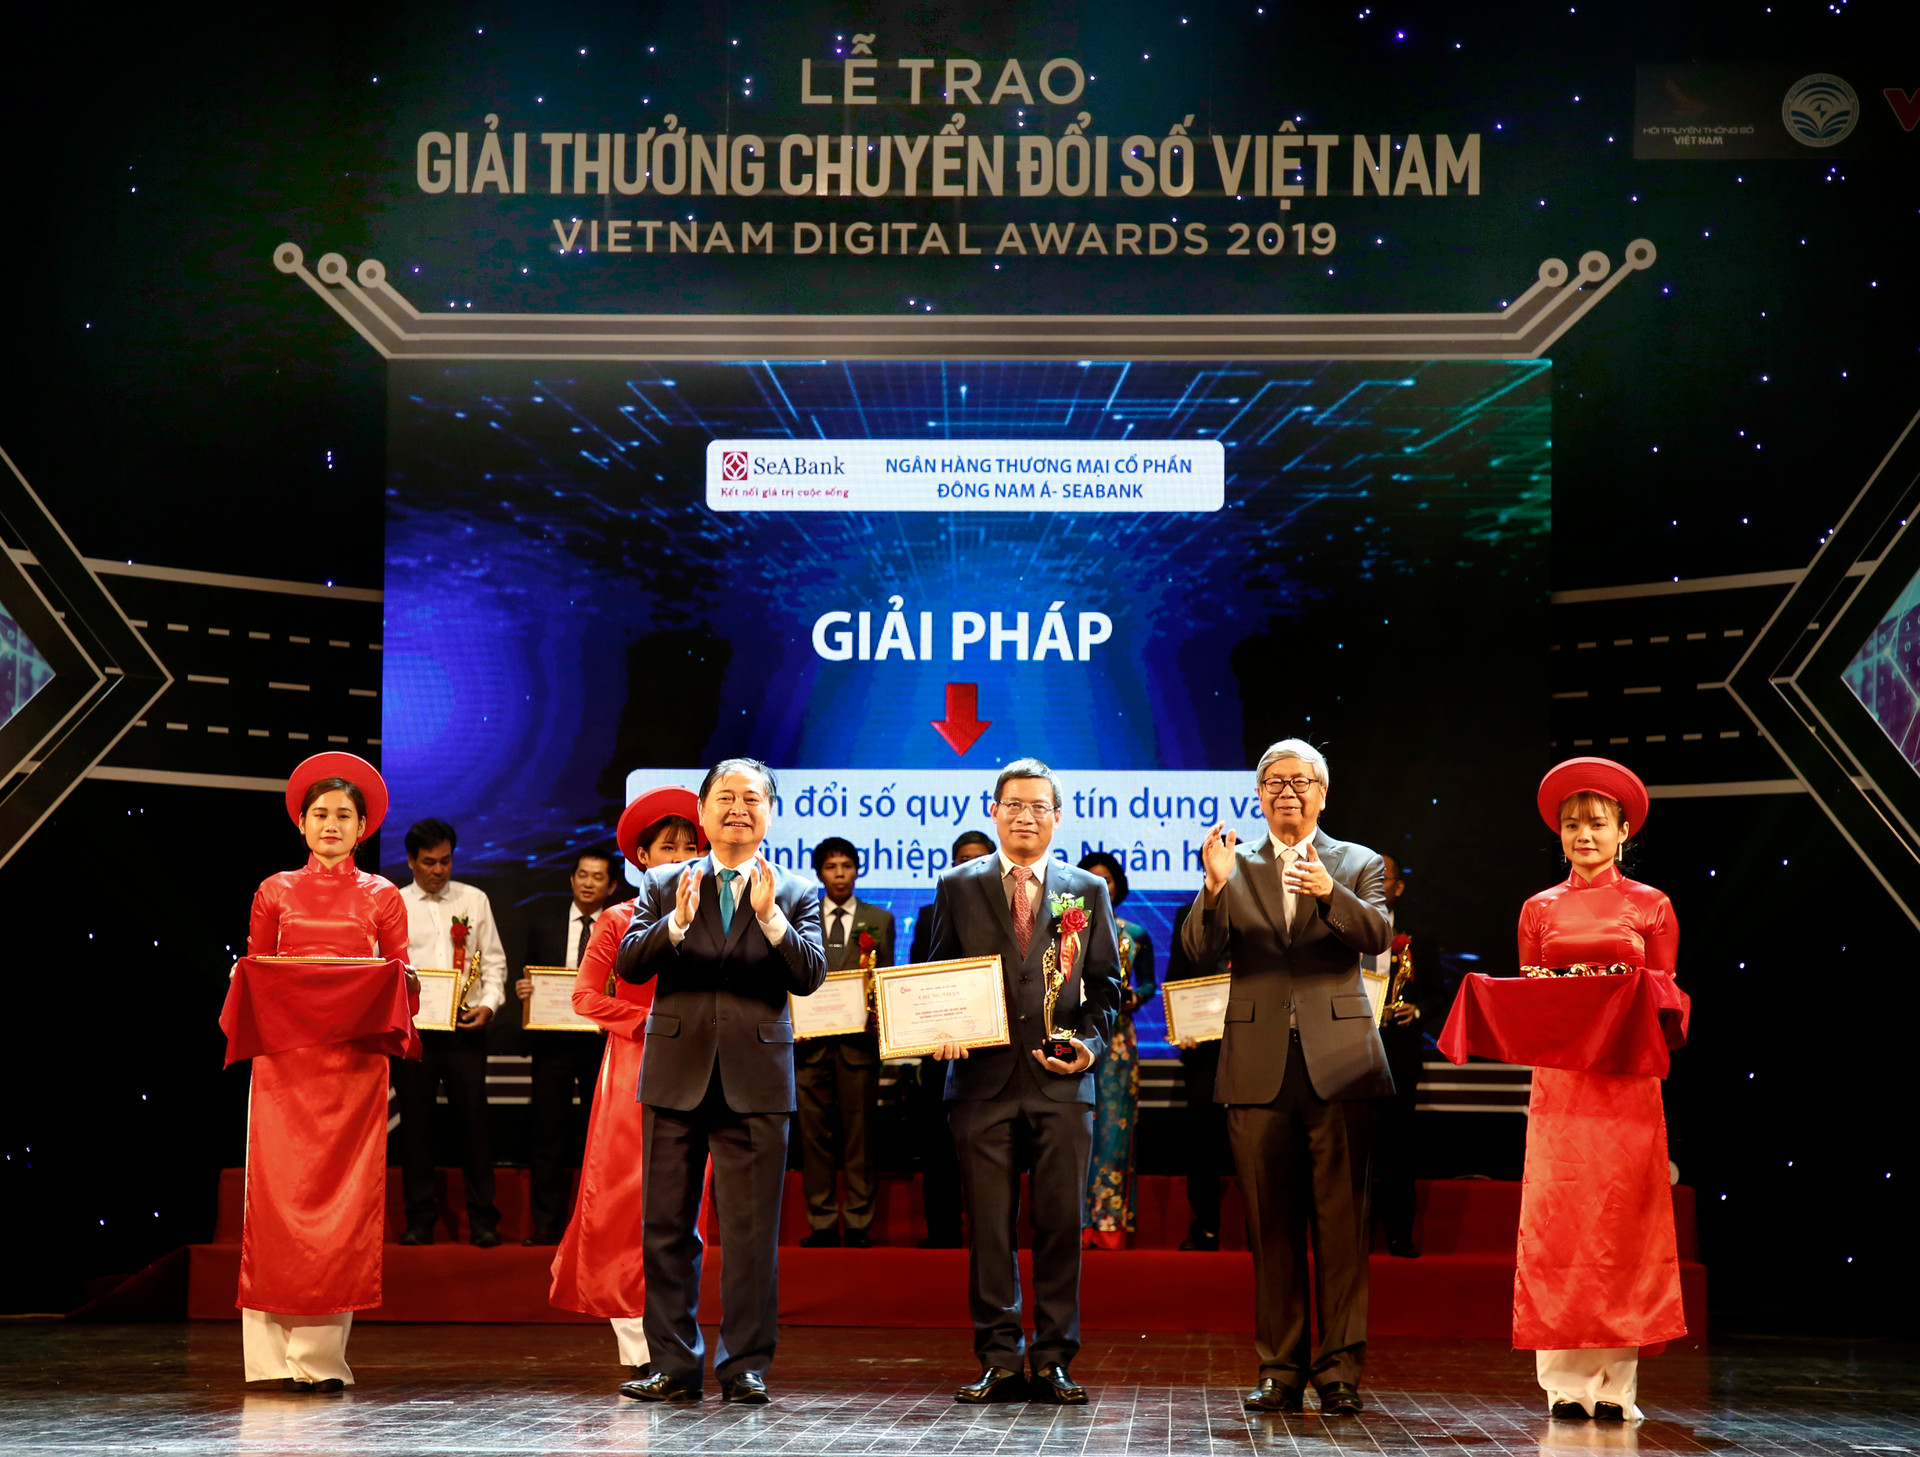 SeABank vinh dự nhận giải thưởng chuyển đổi số Việt Nam - Vienam Digital Awards 2019